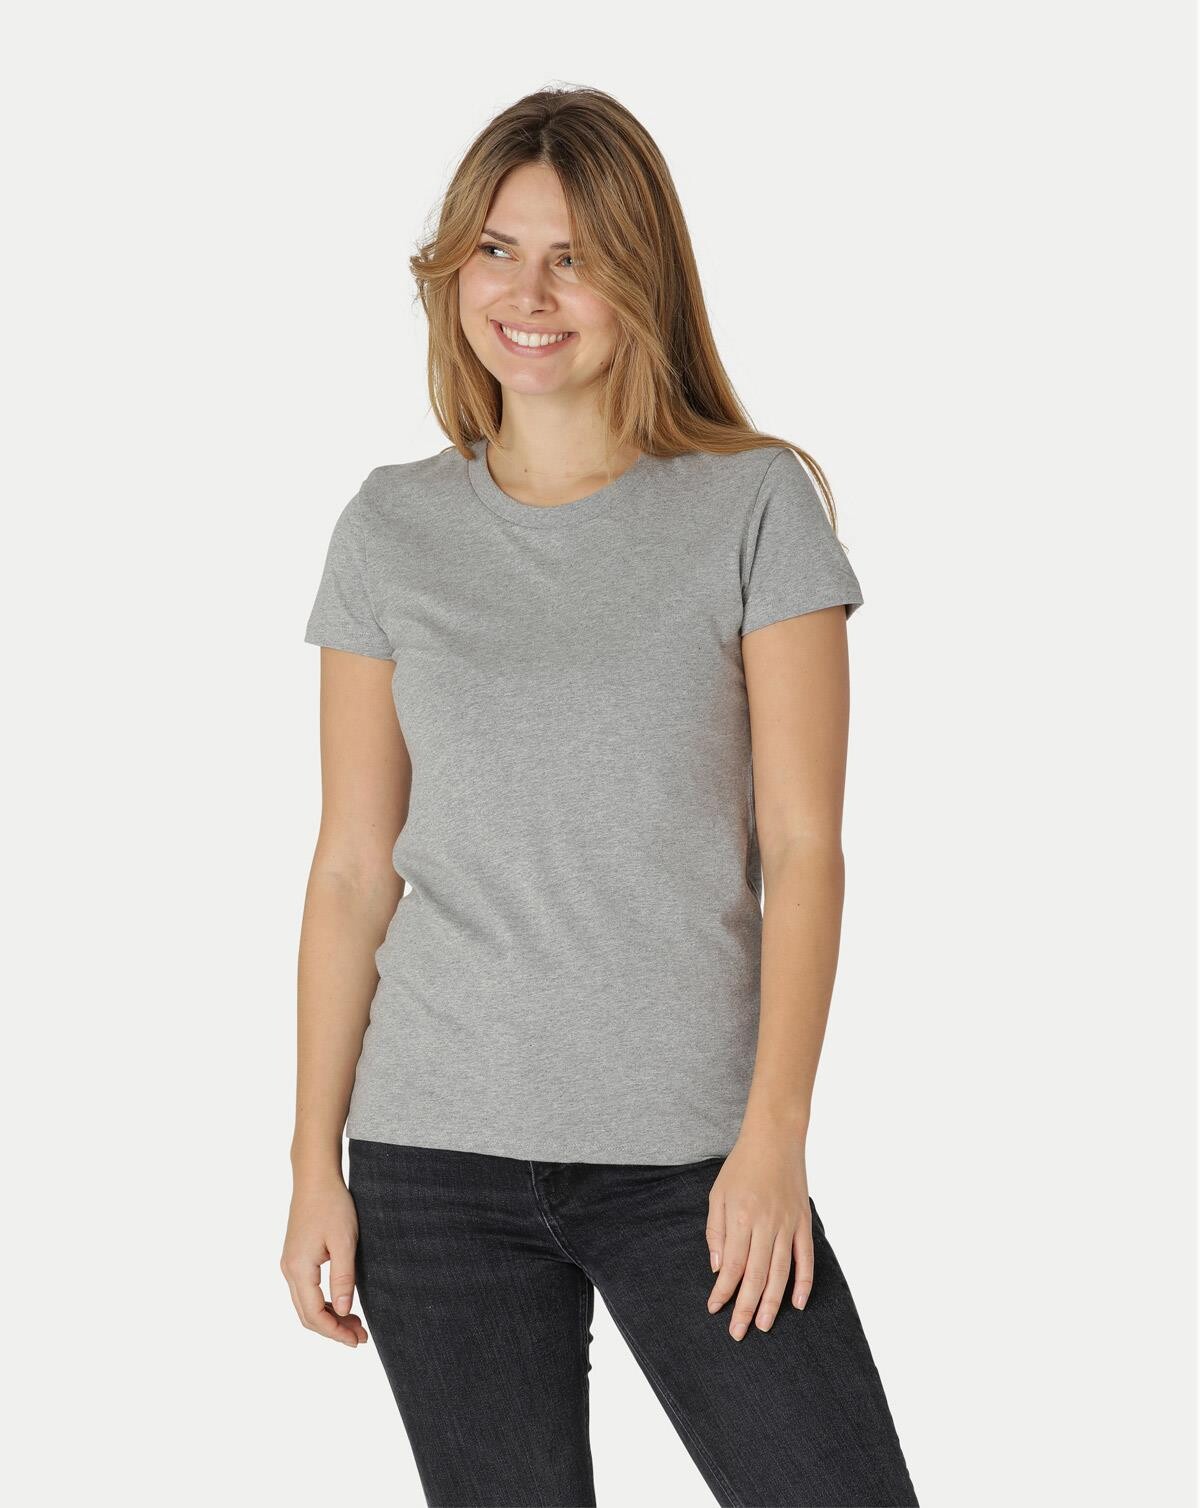 Neutral Økologisk Dame Tætsiddende T-Shirt (Grå Meleret, L)